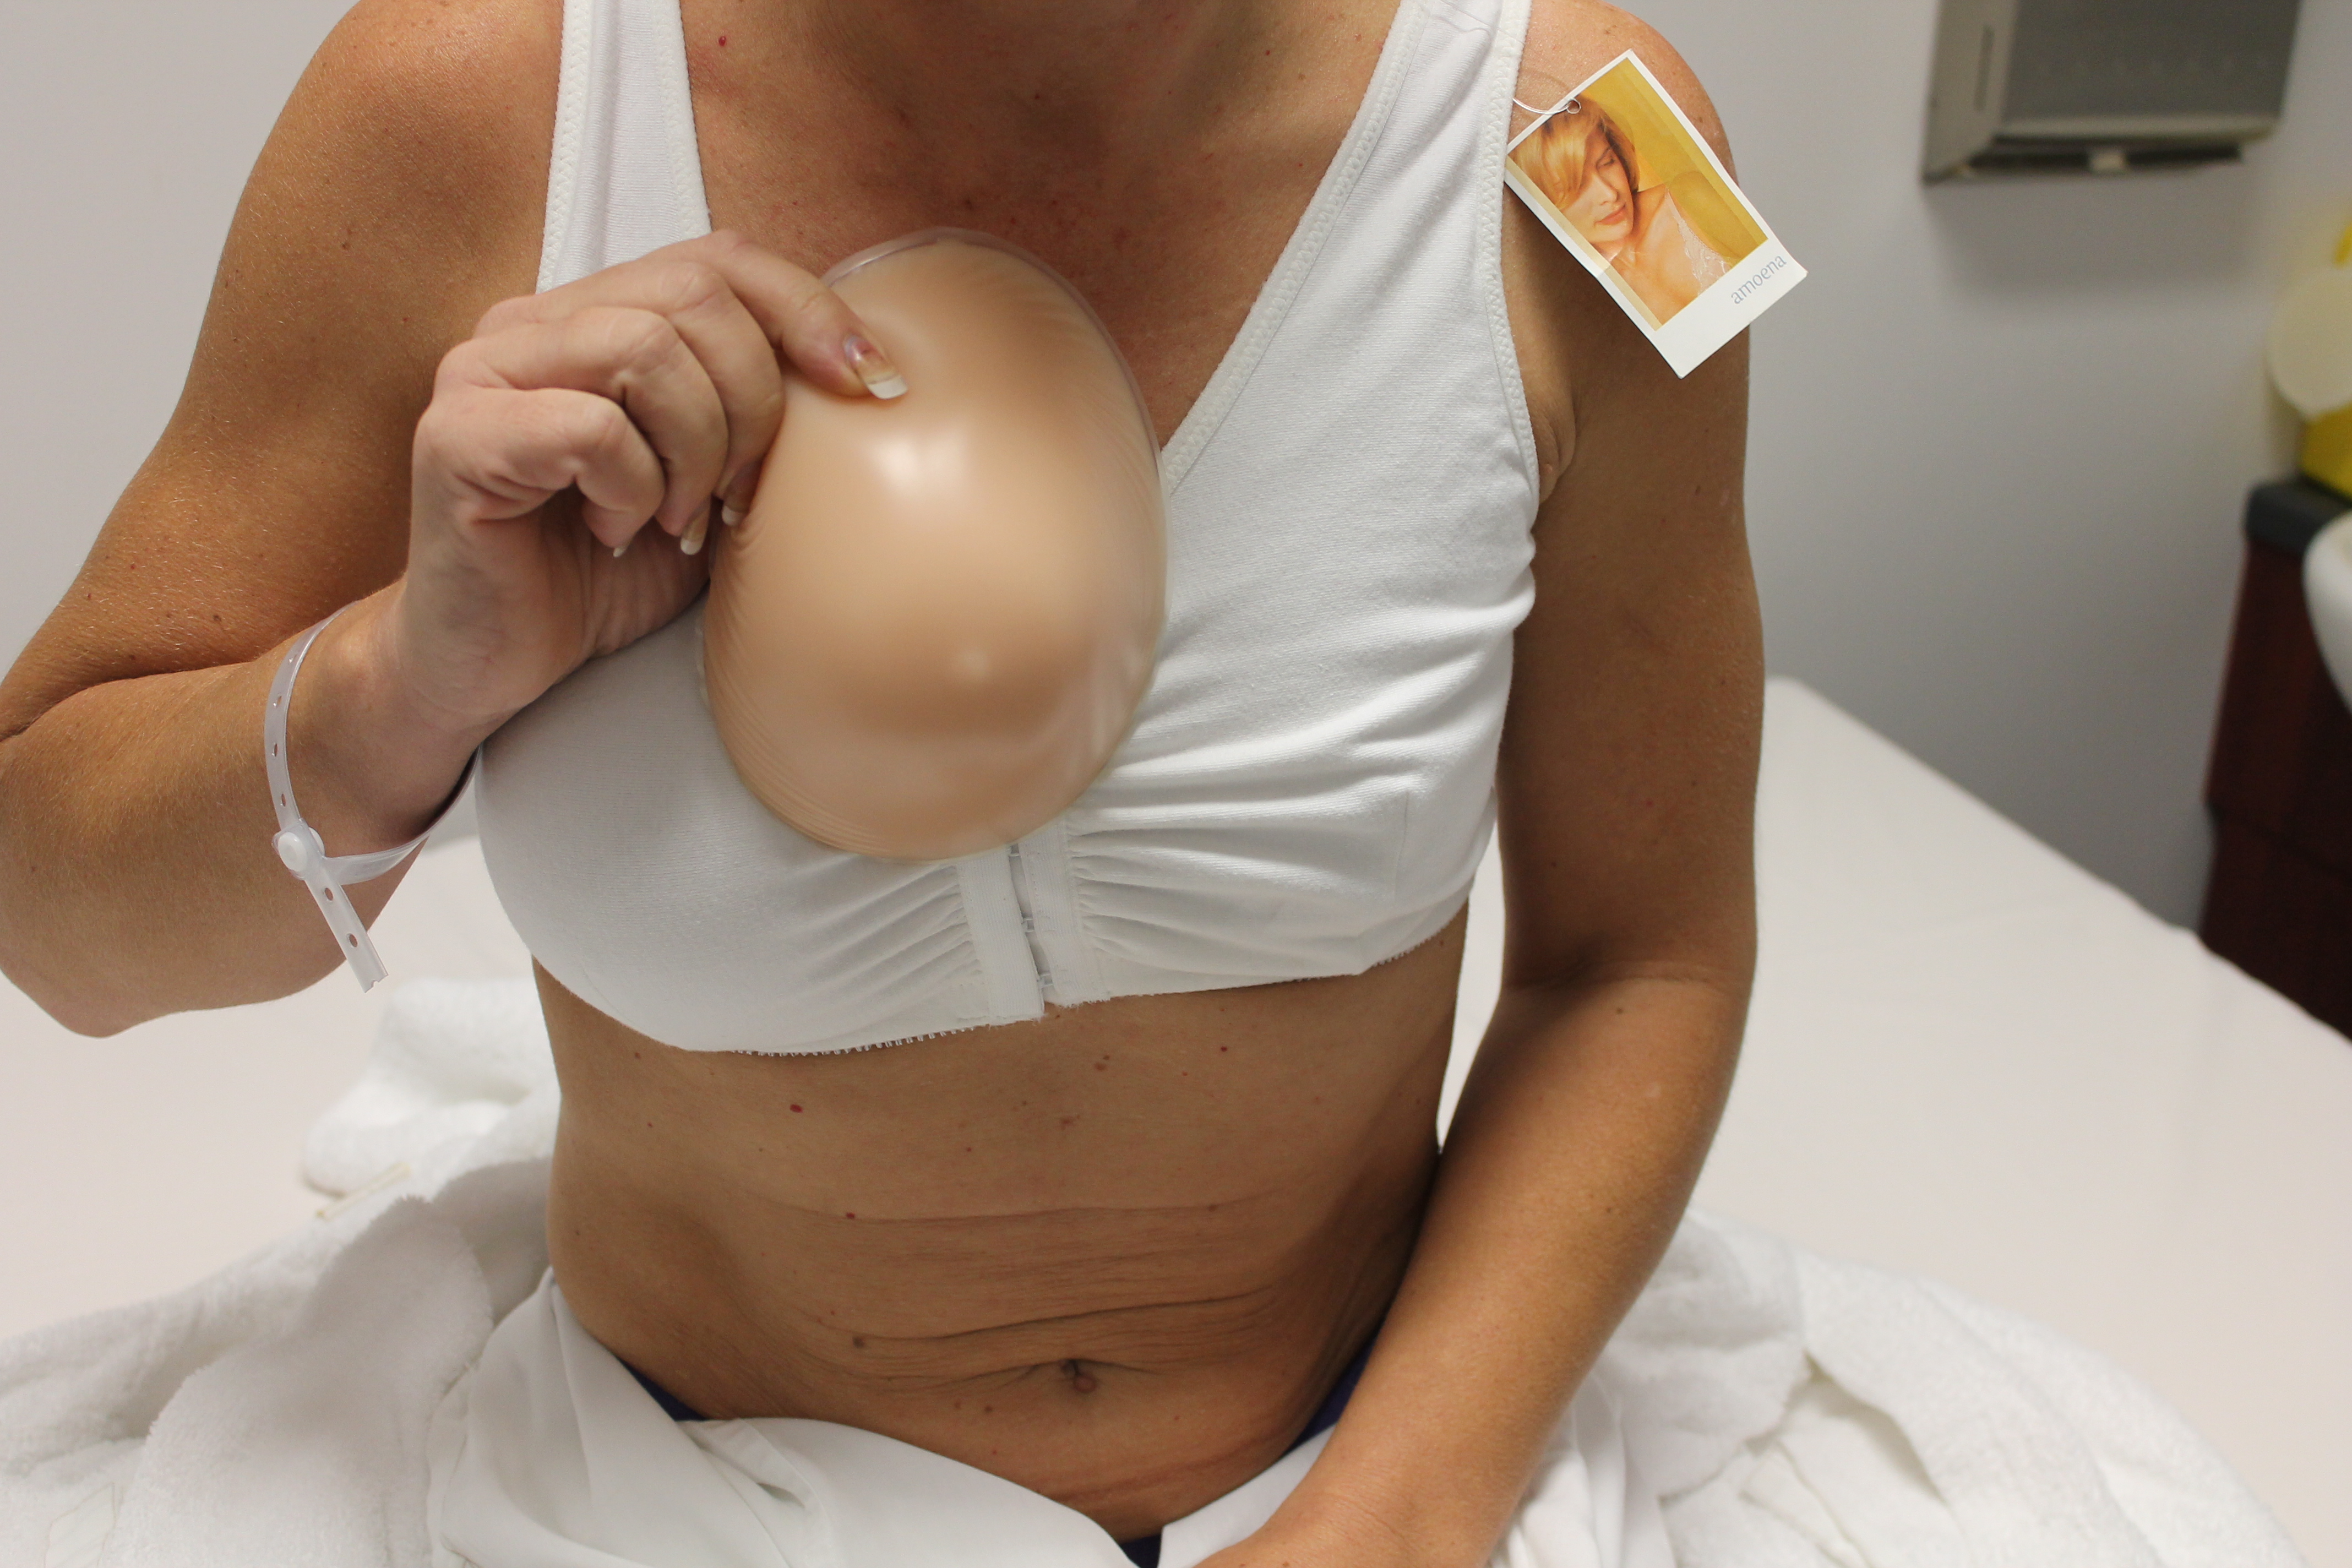 цена на силиконовую импланты грудь фото 25